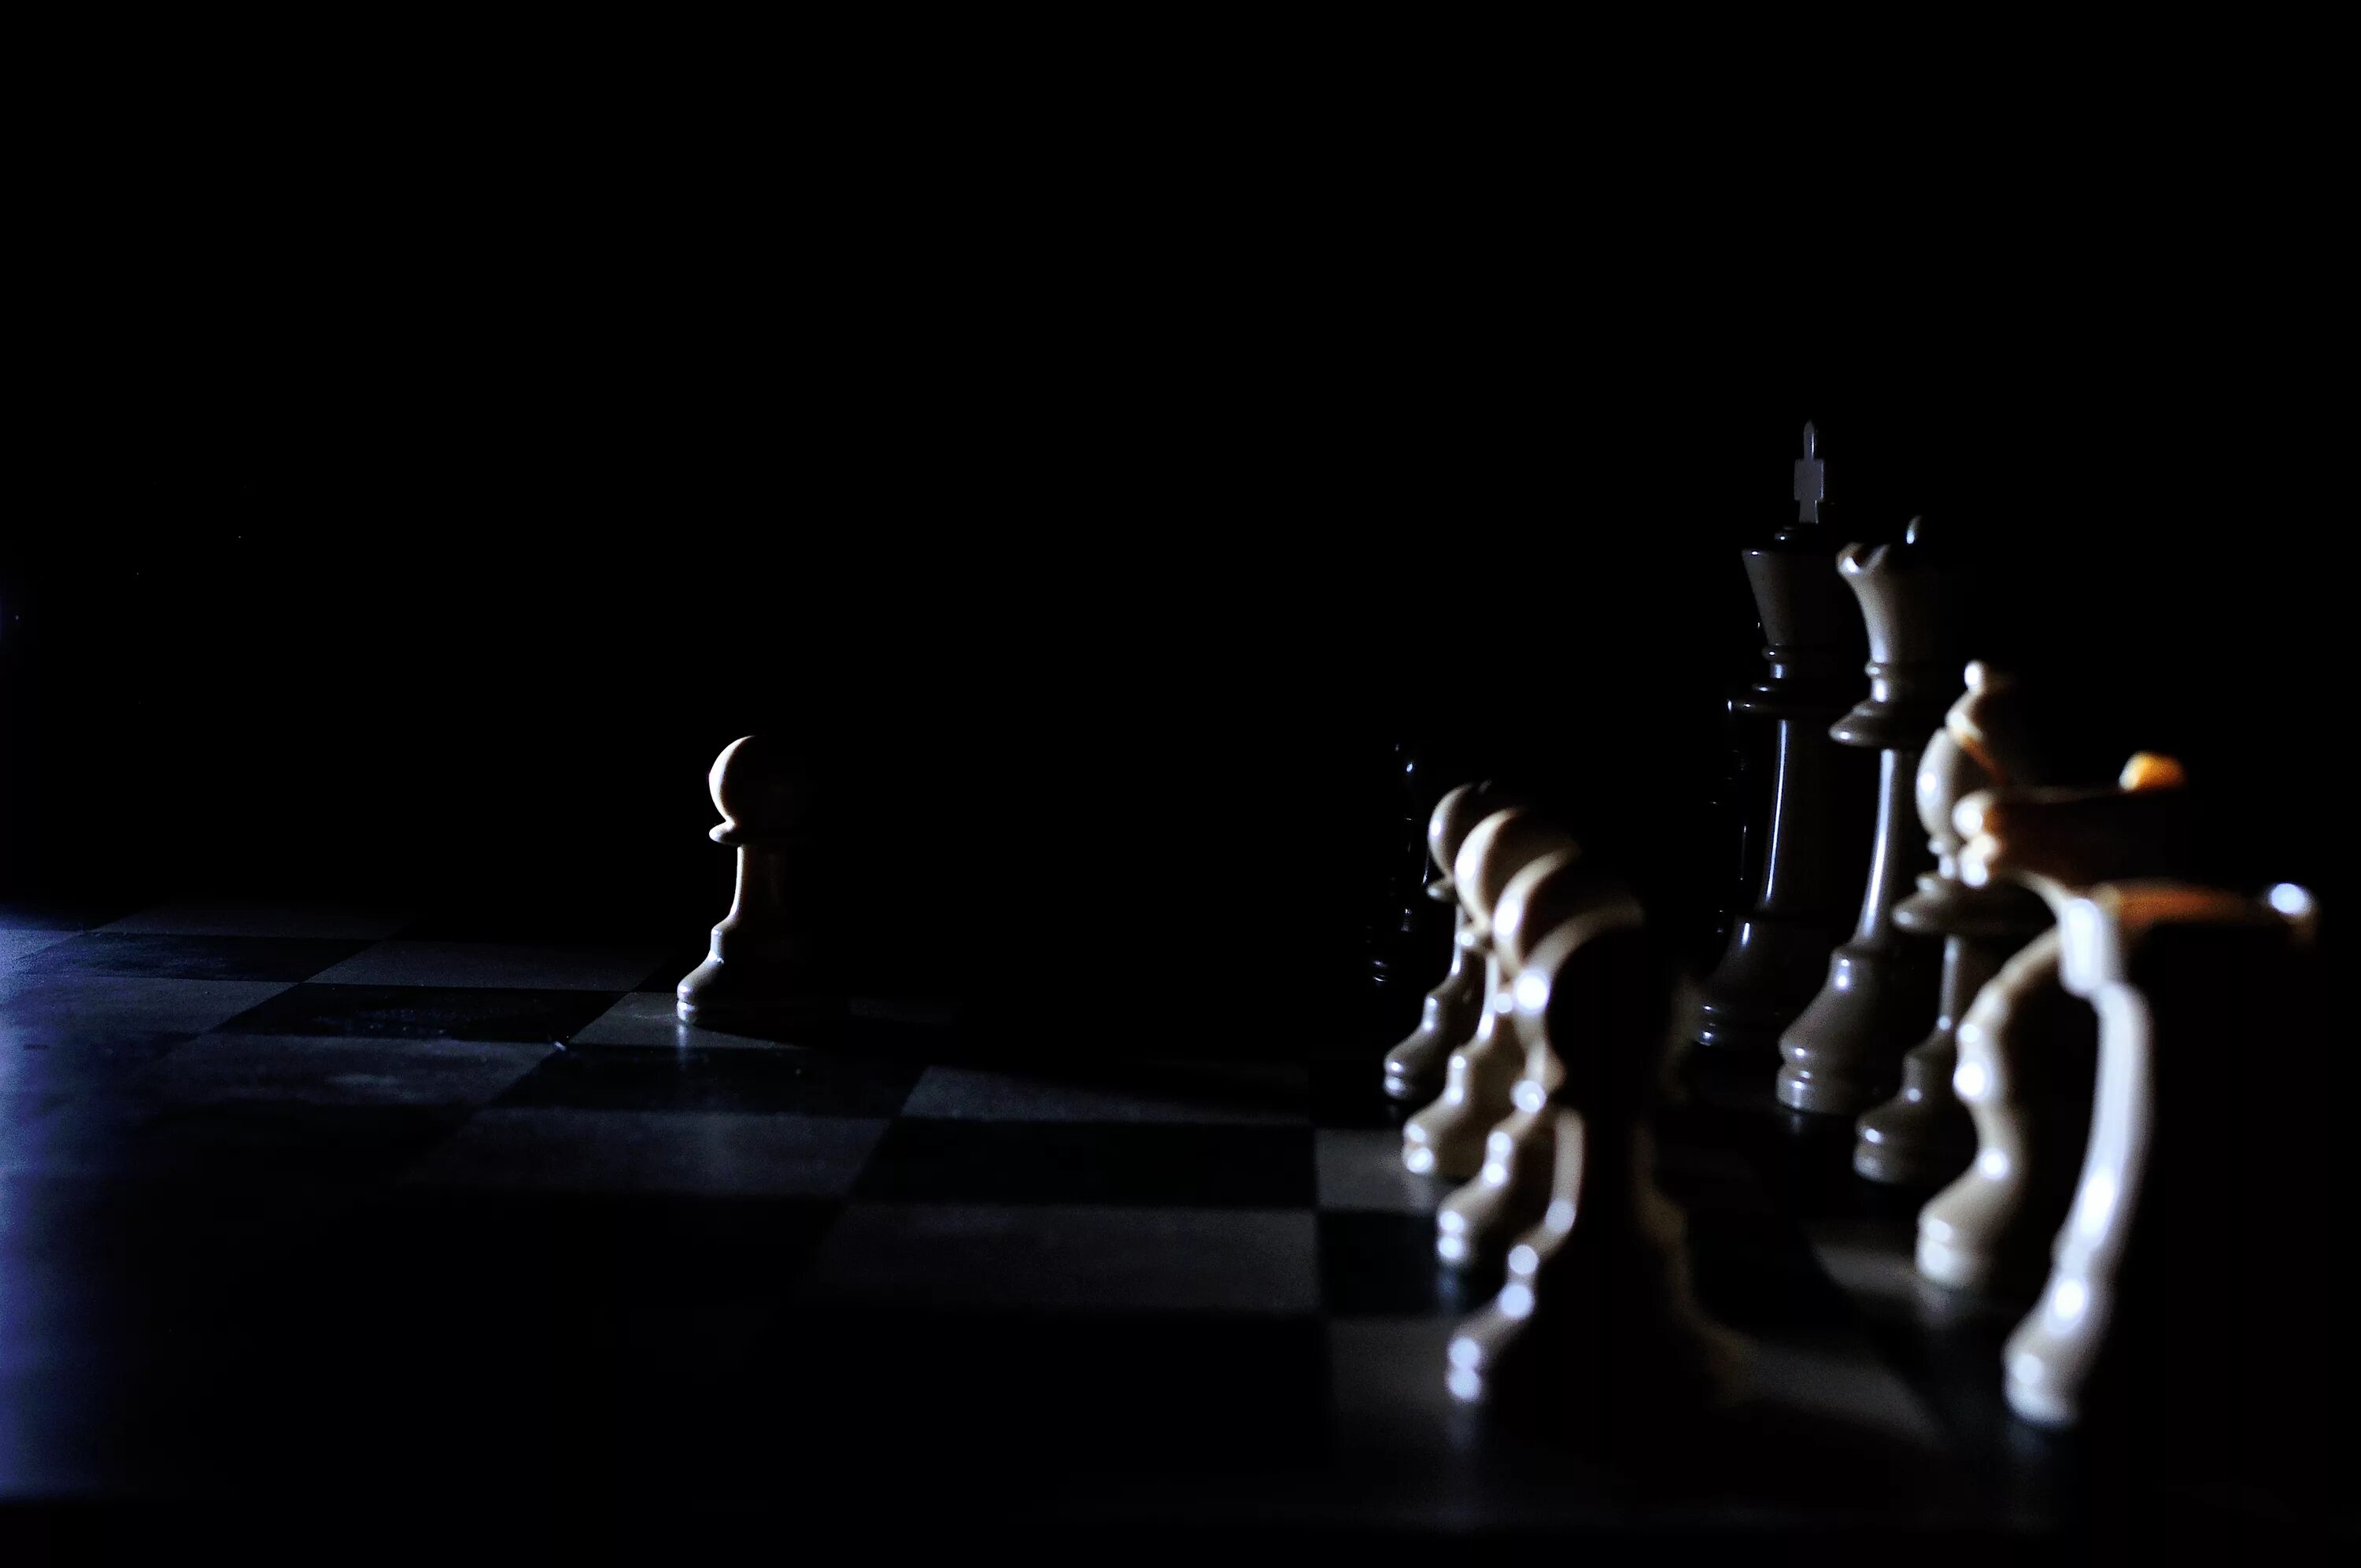 Шахматы на черном фоне. Шахматы в темноте. Шахматная доска в темноте. Шахматные фигуры на темном фоне. Различать в темноте